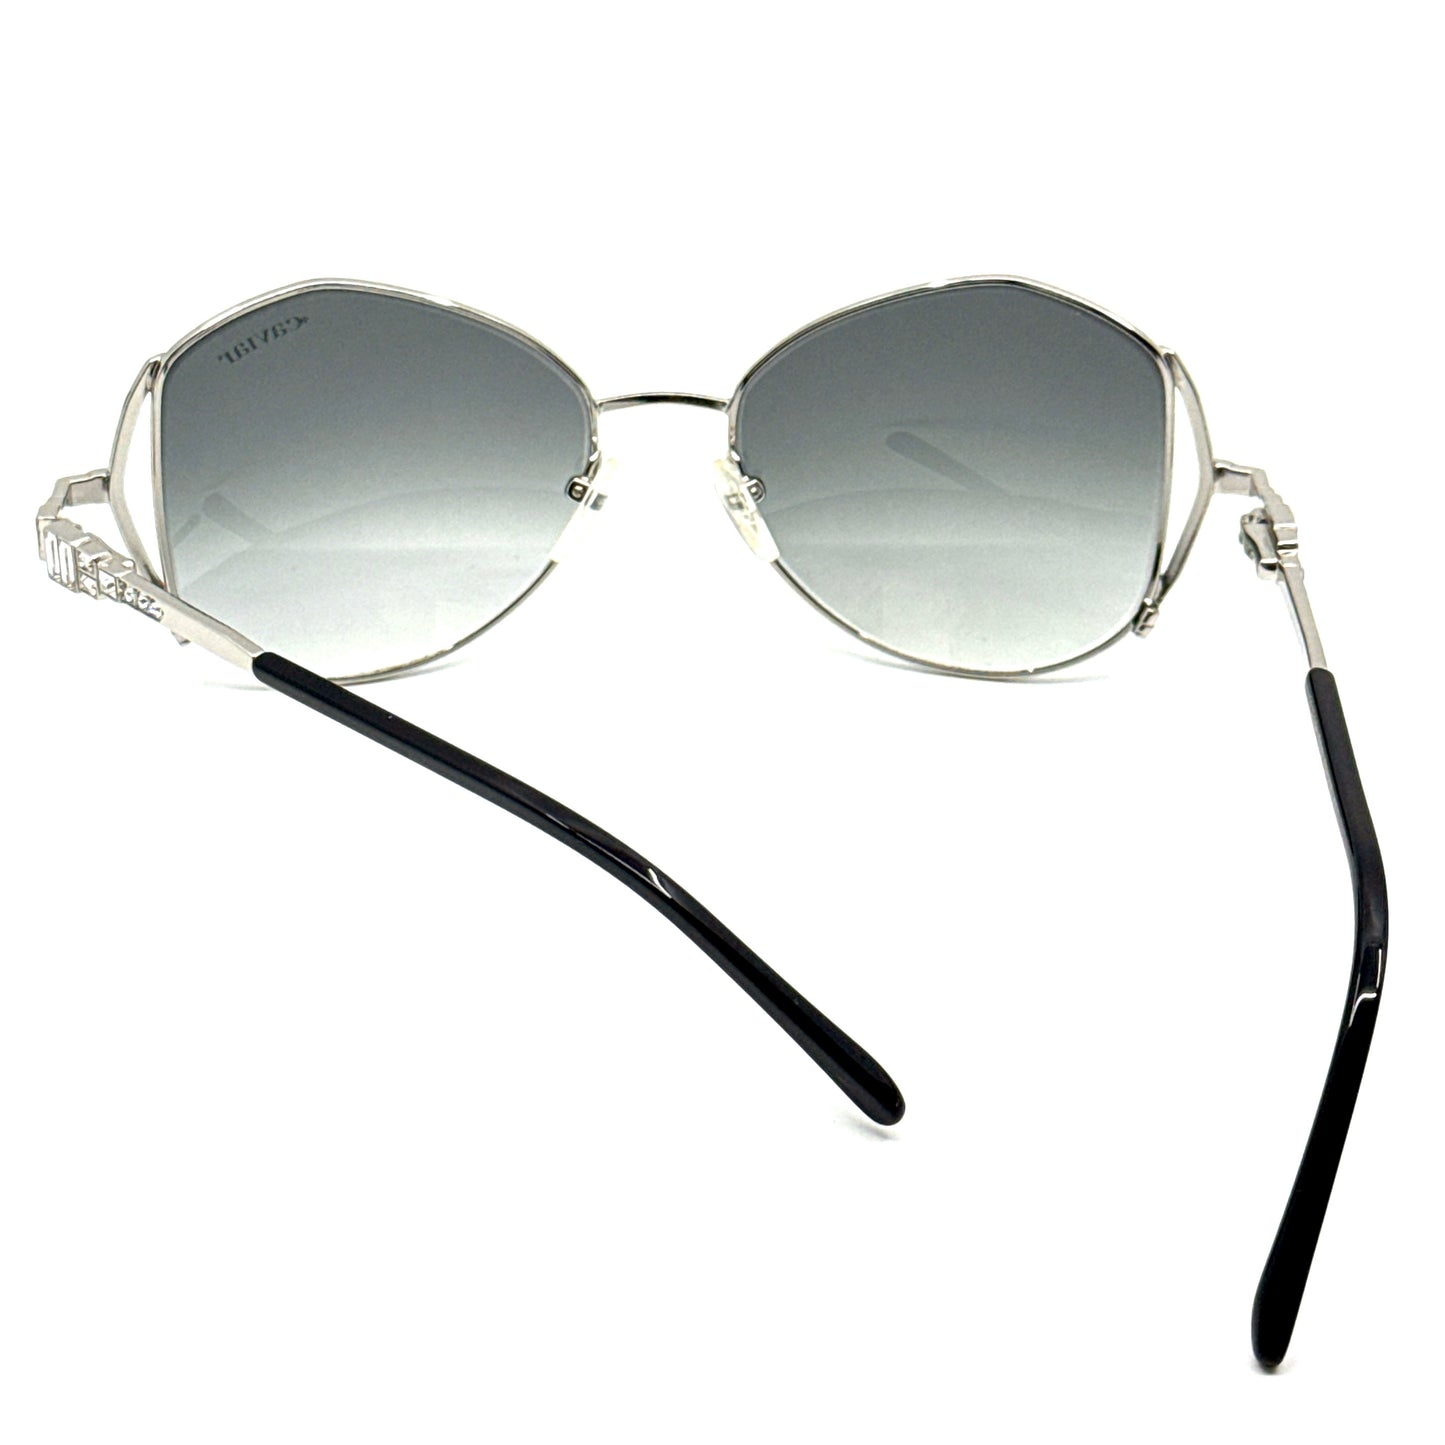 CAVIAR Sunglasses M4892 C24